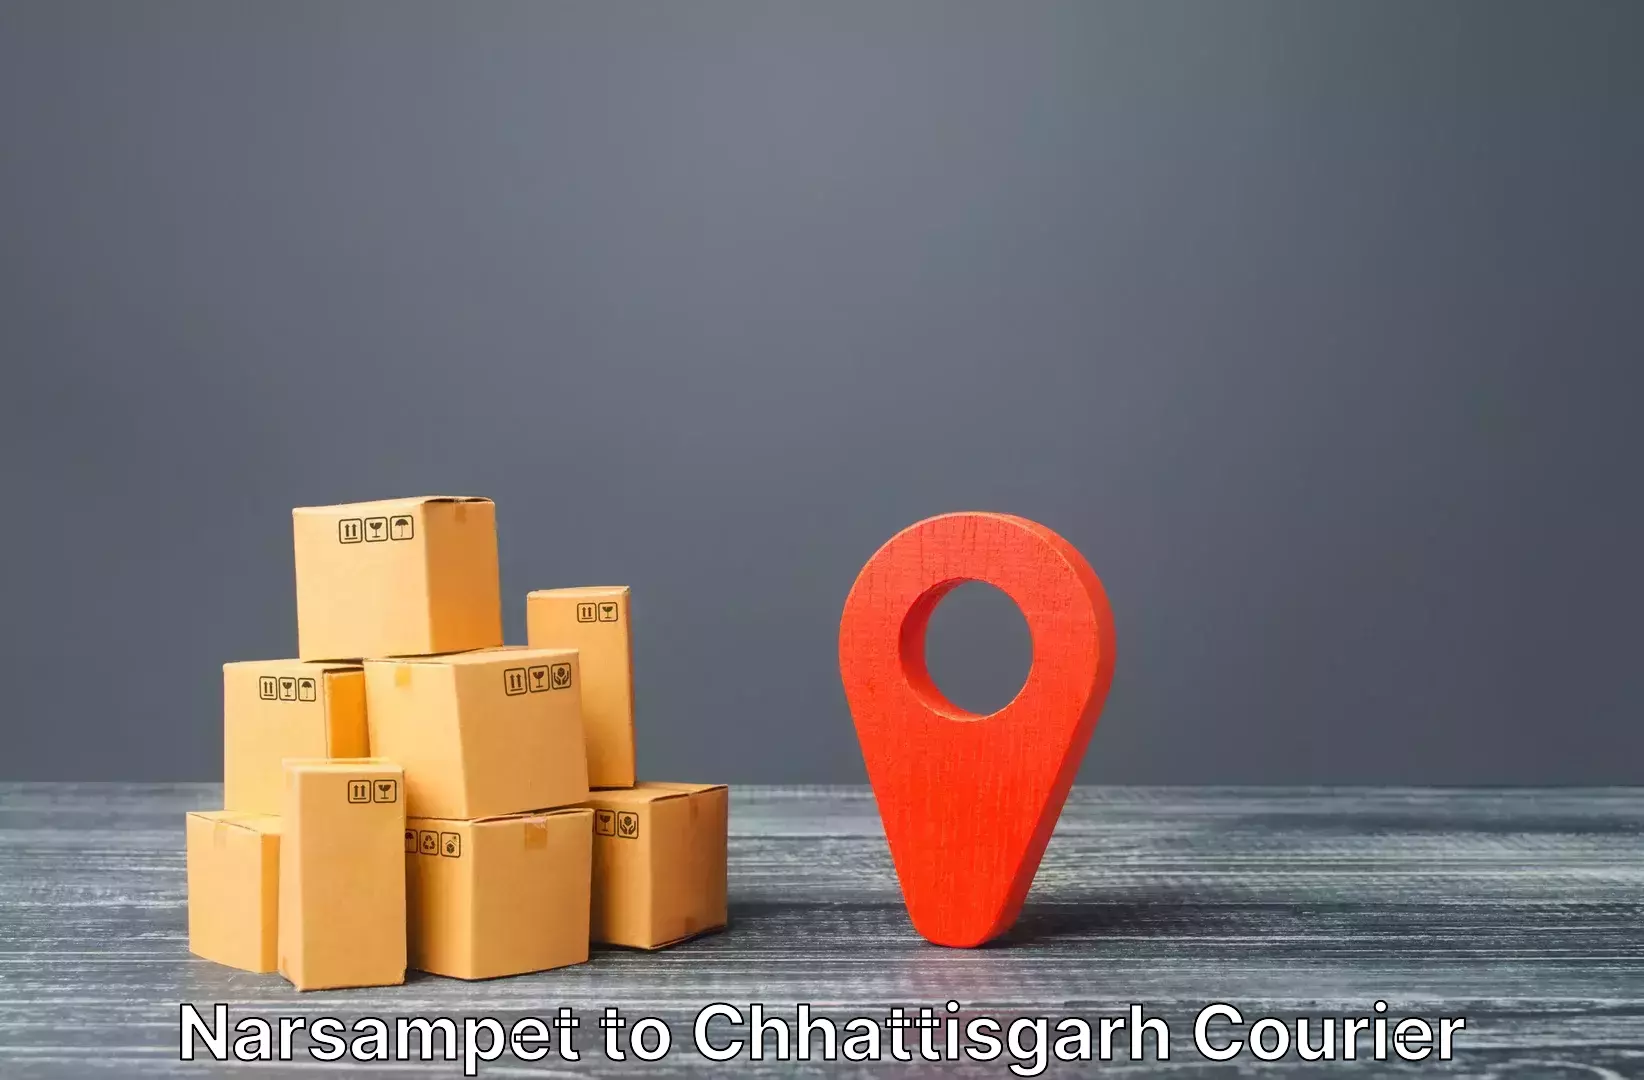 Expedited baggage courier Narsampet to Bijapur Chhattisgarh